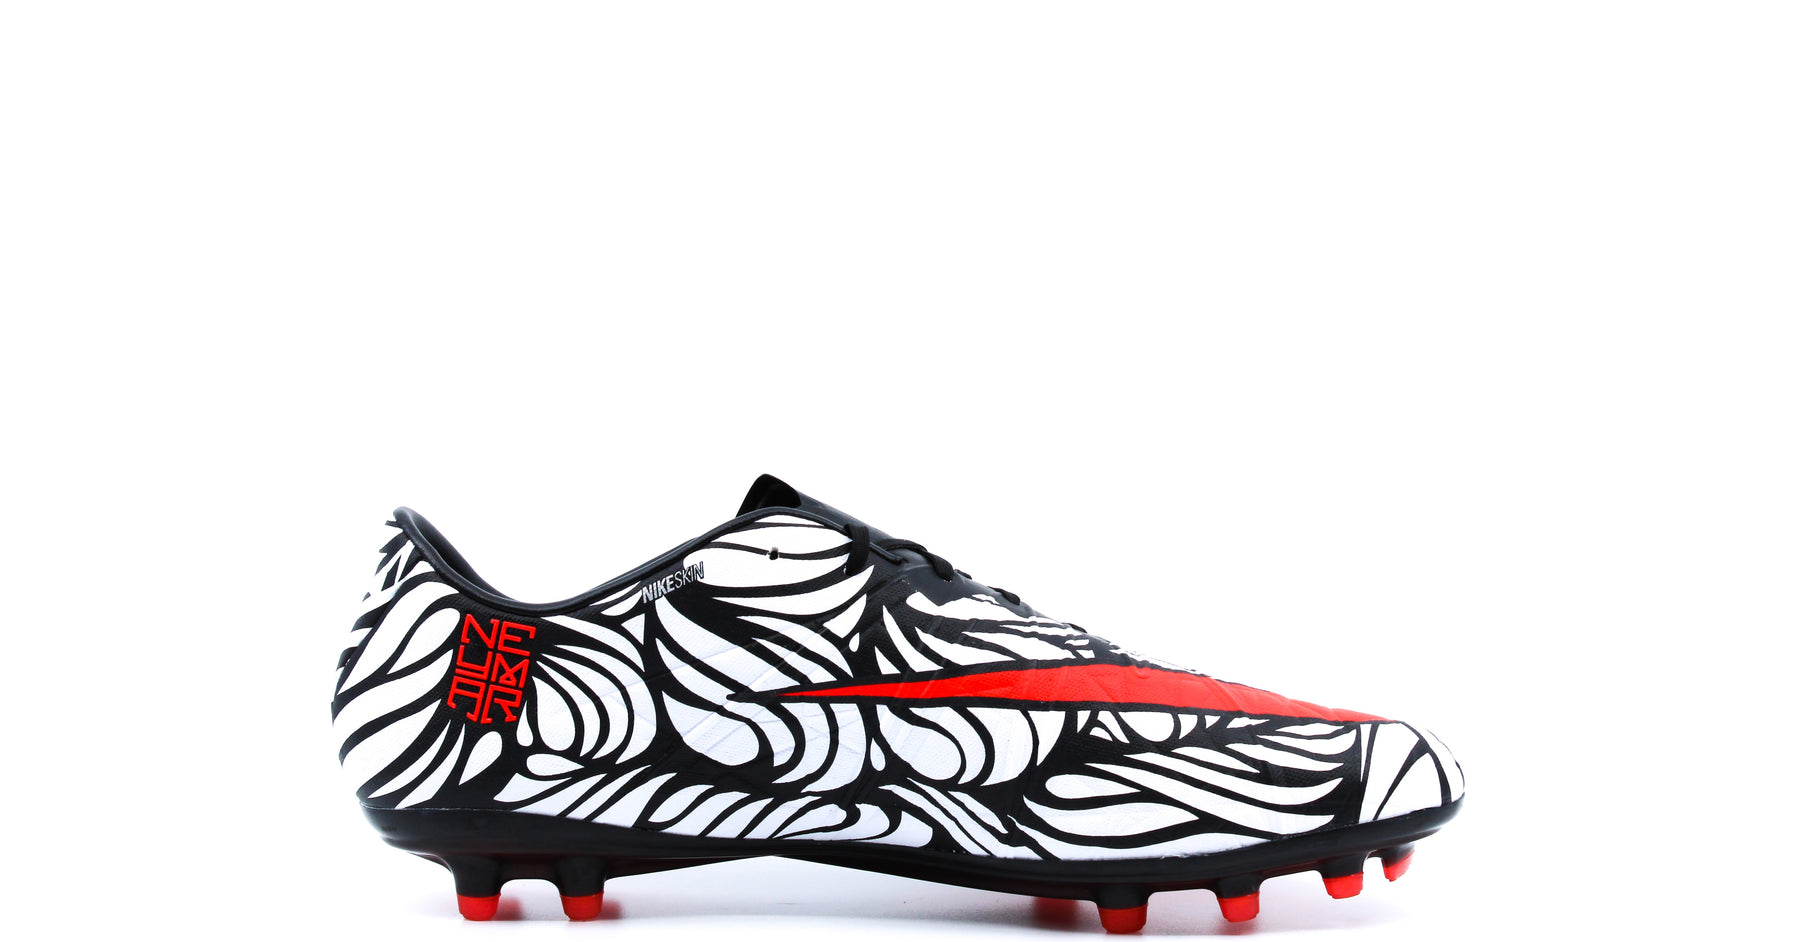 gastheer Mexico Kruiden Nike Hypervenom Phinish NJR FG Black/Bright Crimson/White (820122-061) –  Retro Soccer Cleats